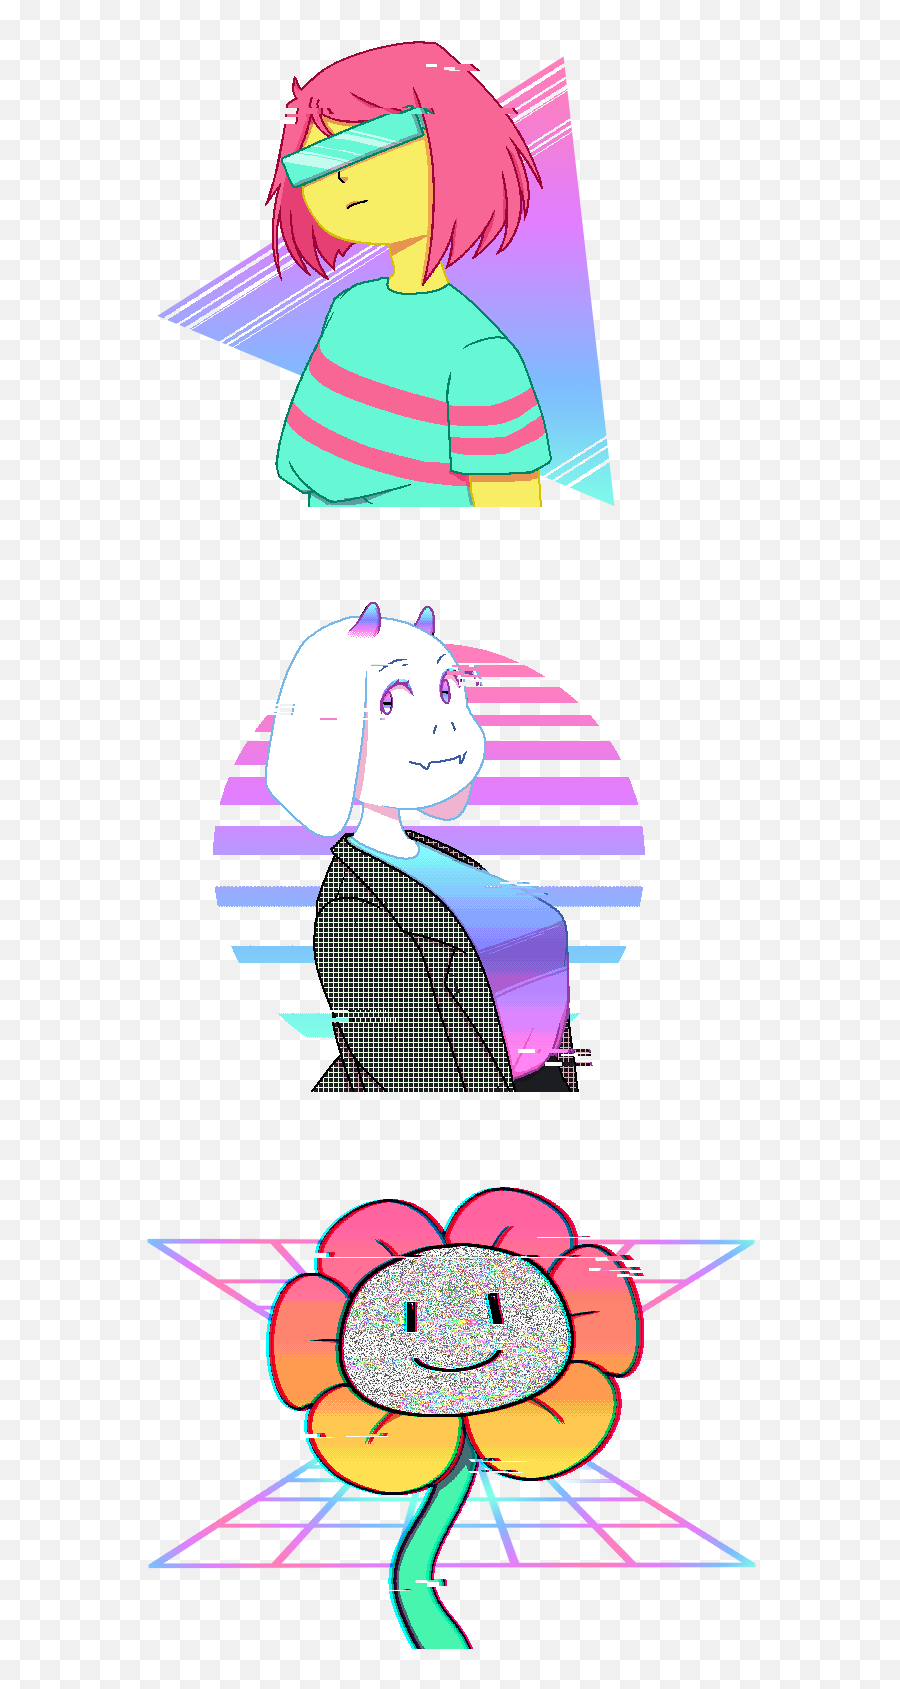 An Au No - Girly Emoji,Emotion Oc Sketch